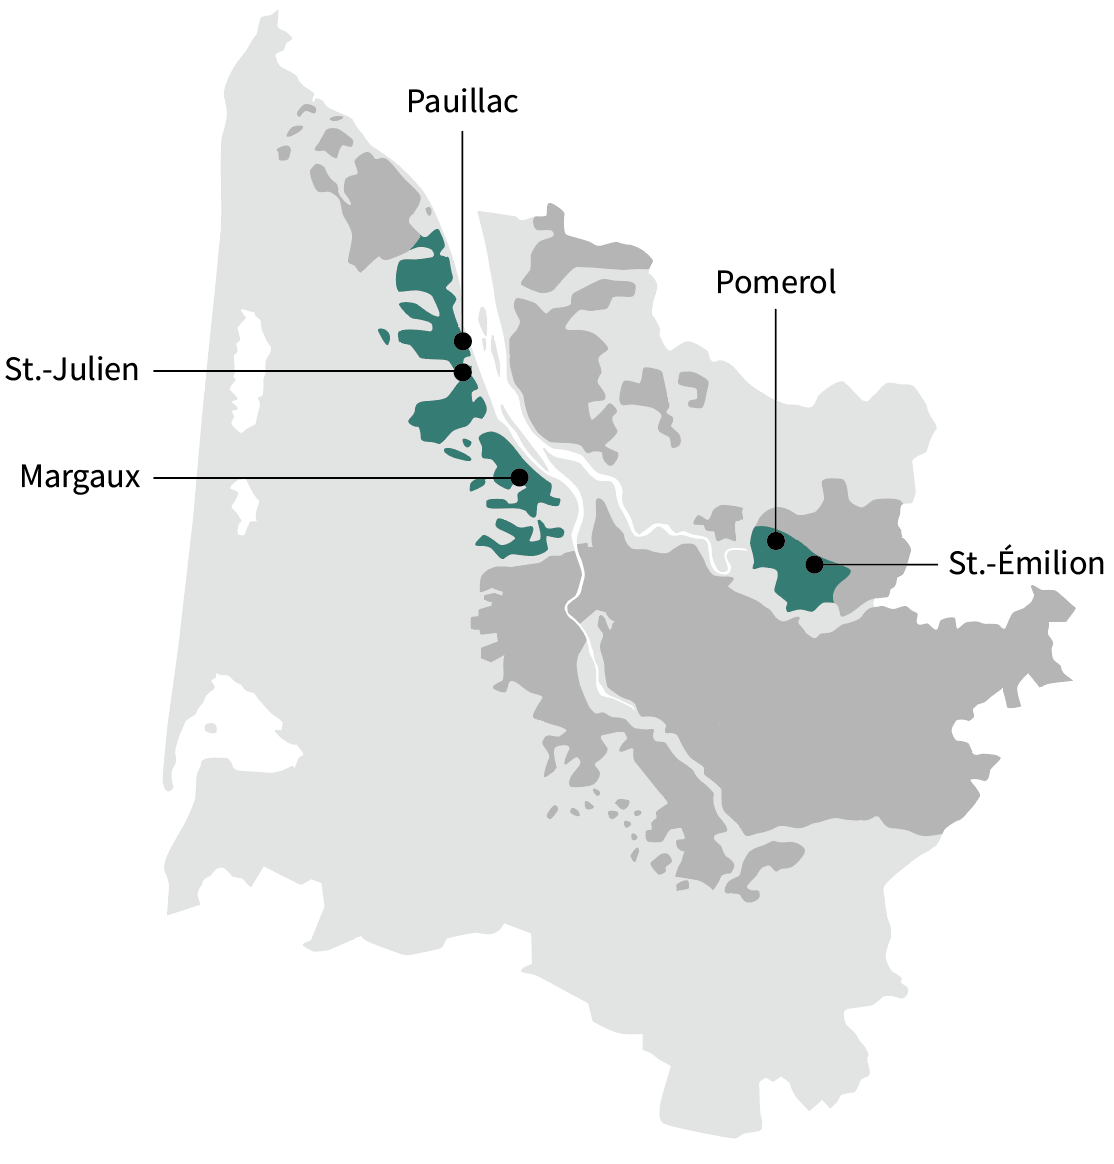 map of Bordeaux highlighting key appelations: Pauillac, Pomerok, St.-Émilion, Margaux and St.Julien